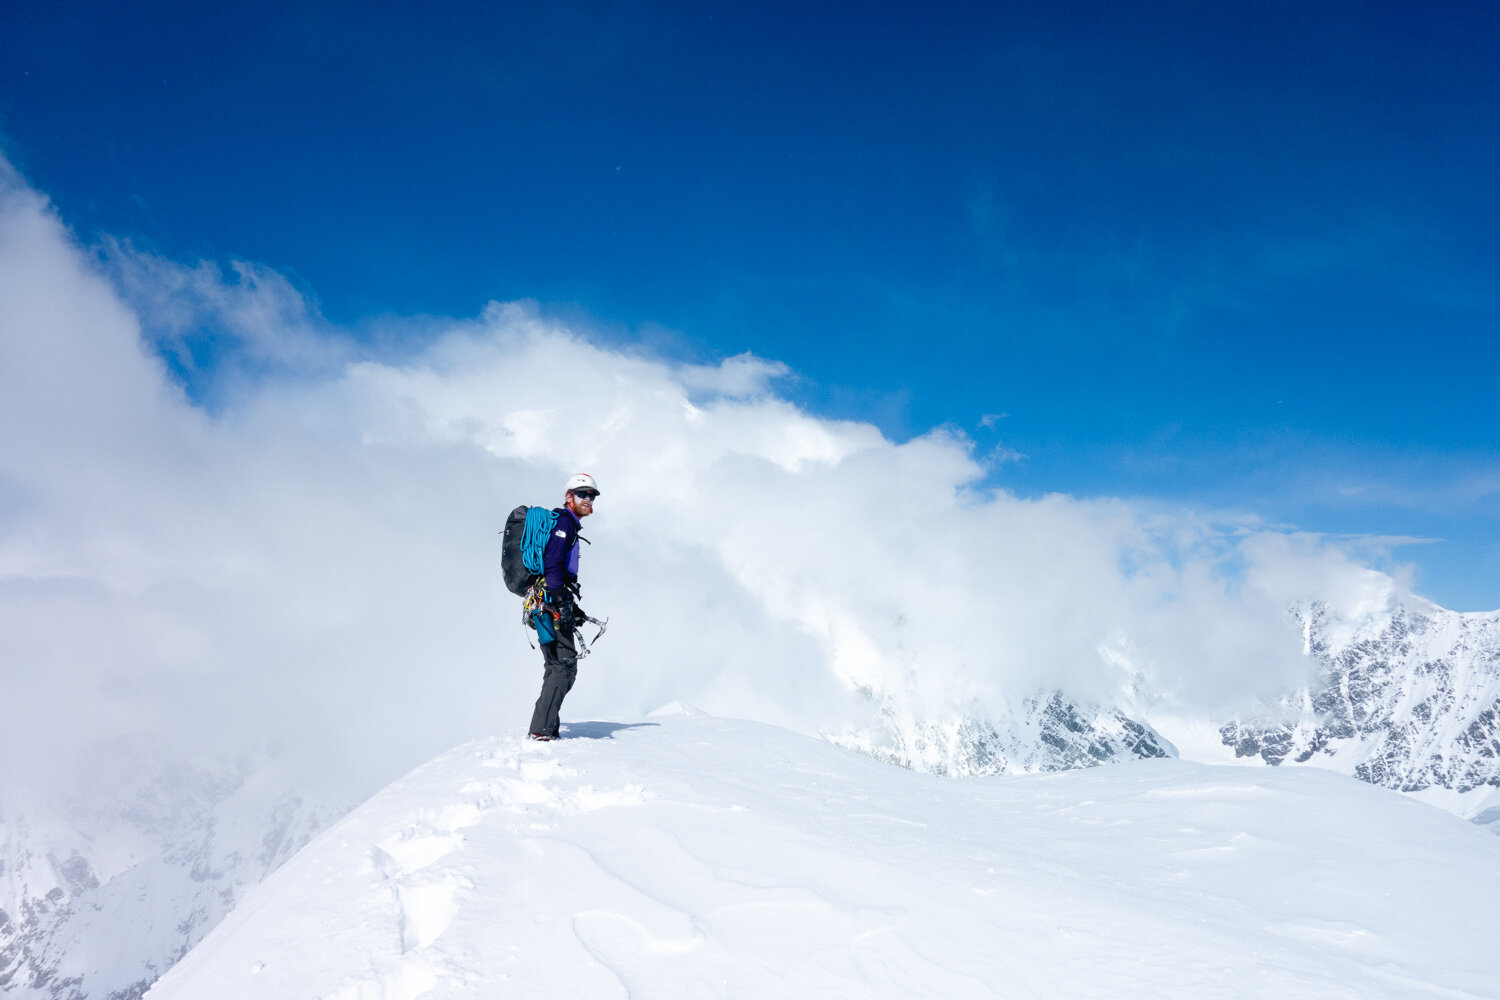 Маартен Ван Херен (Maarten Van Haeren), Итан Берман (Ethan Berman), Питер Хоанг (Peter Hoang) и Алик Берг (Alik Berg) провели шесть недель на леднике под одними из самых известных больших альпийских стен Канады. 